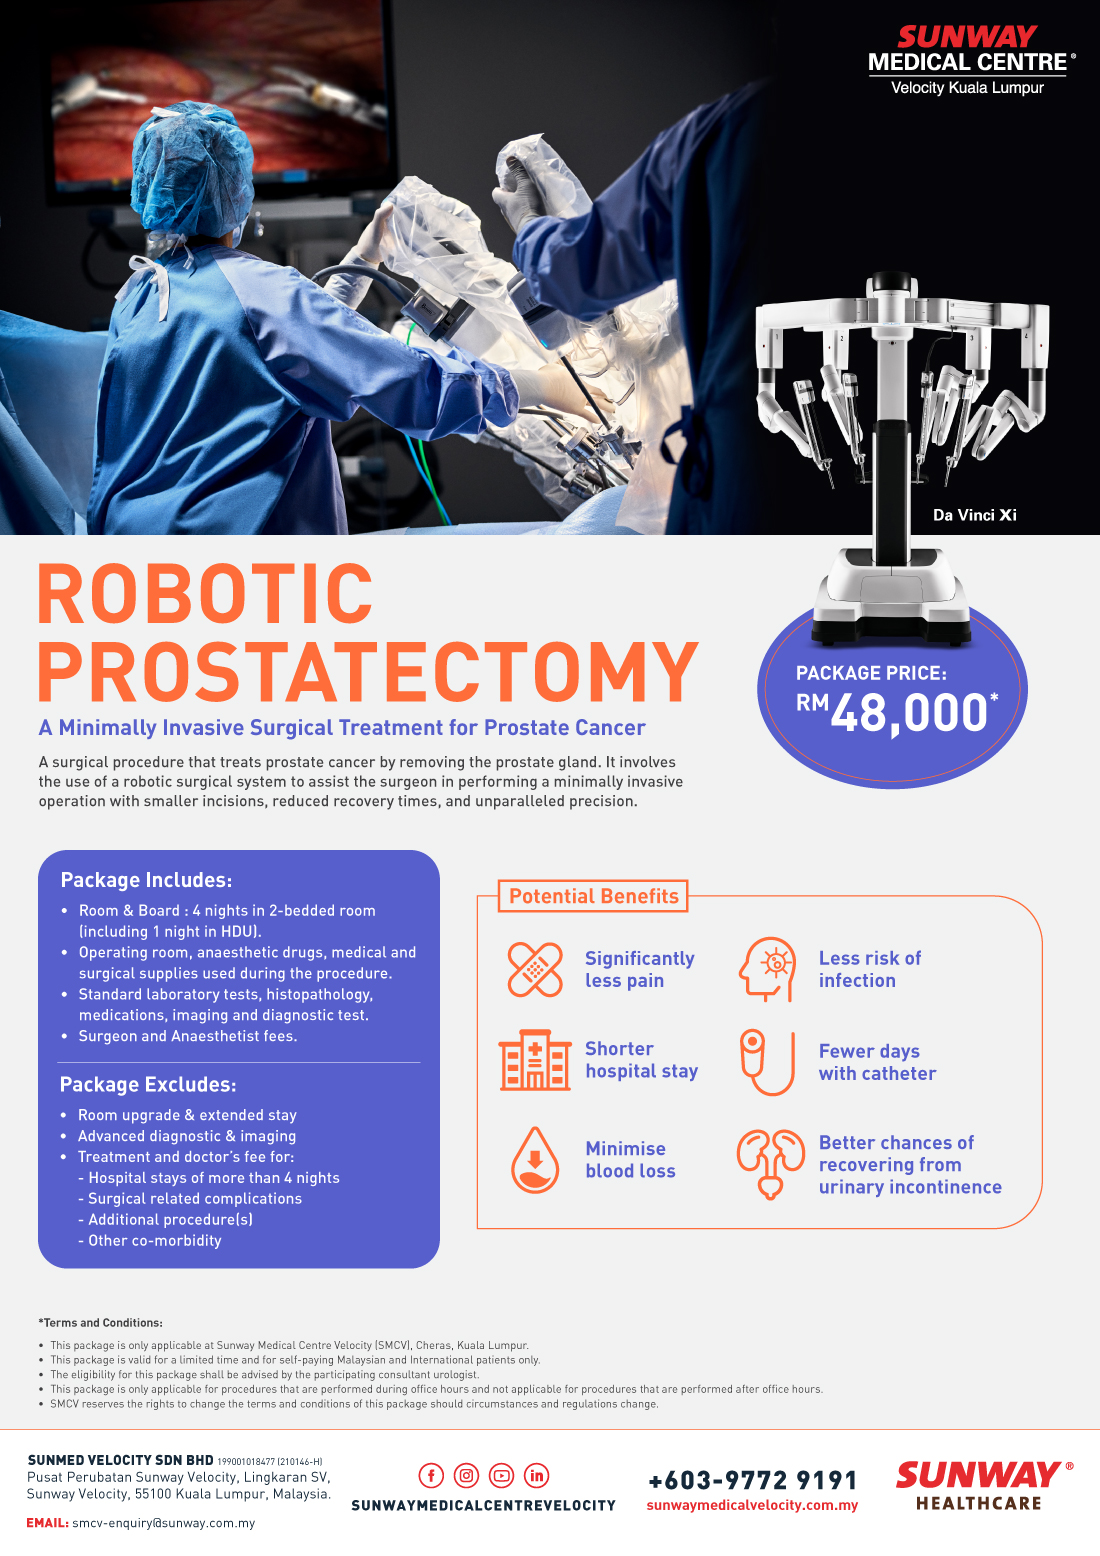 Robotic Prostactectomy